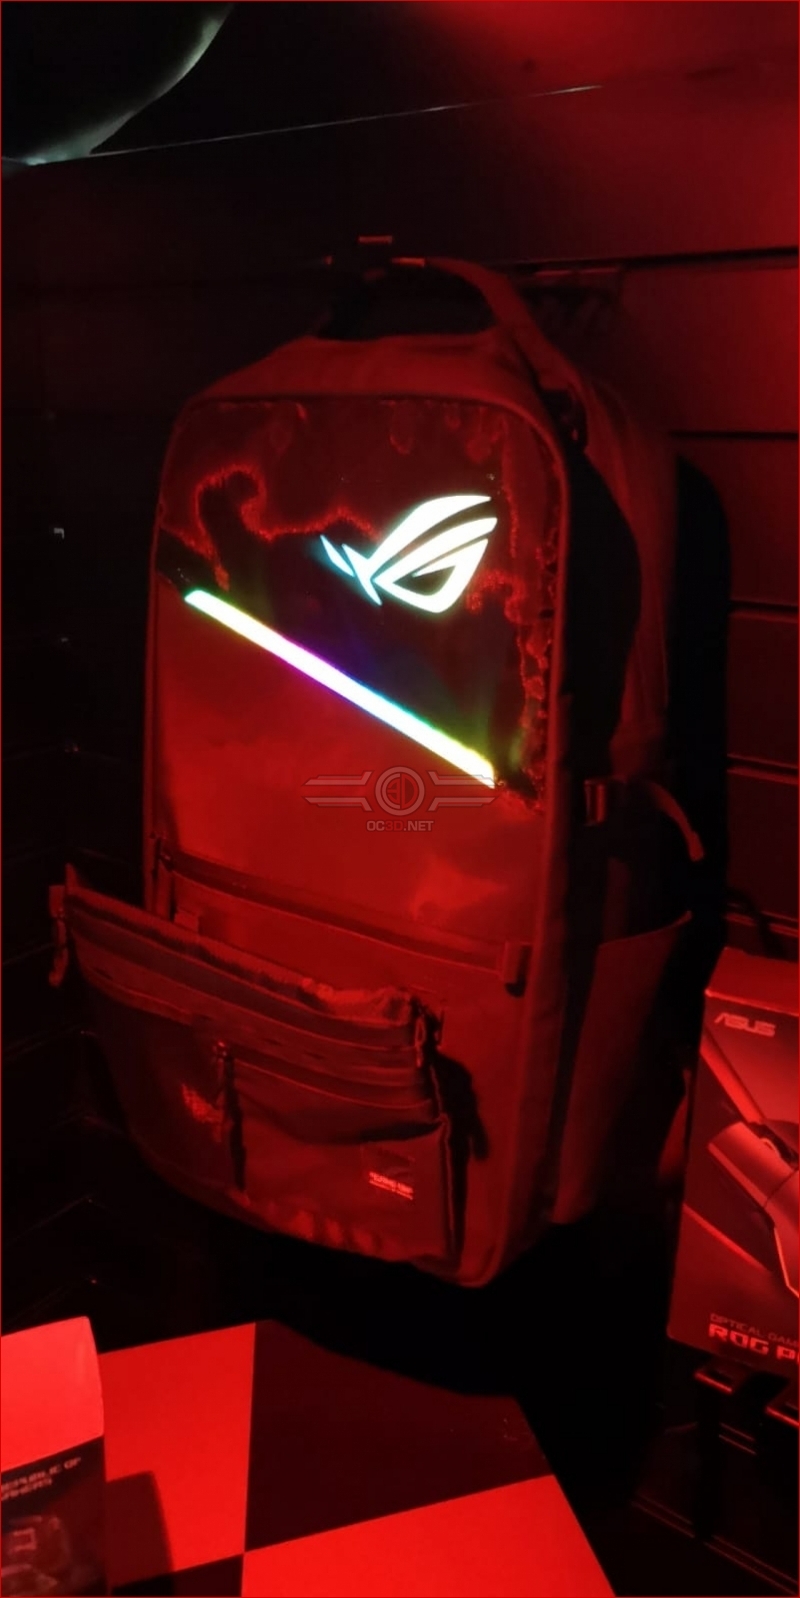 ASUS ROG RGB backpack